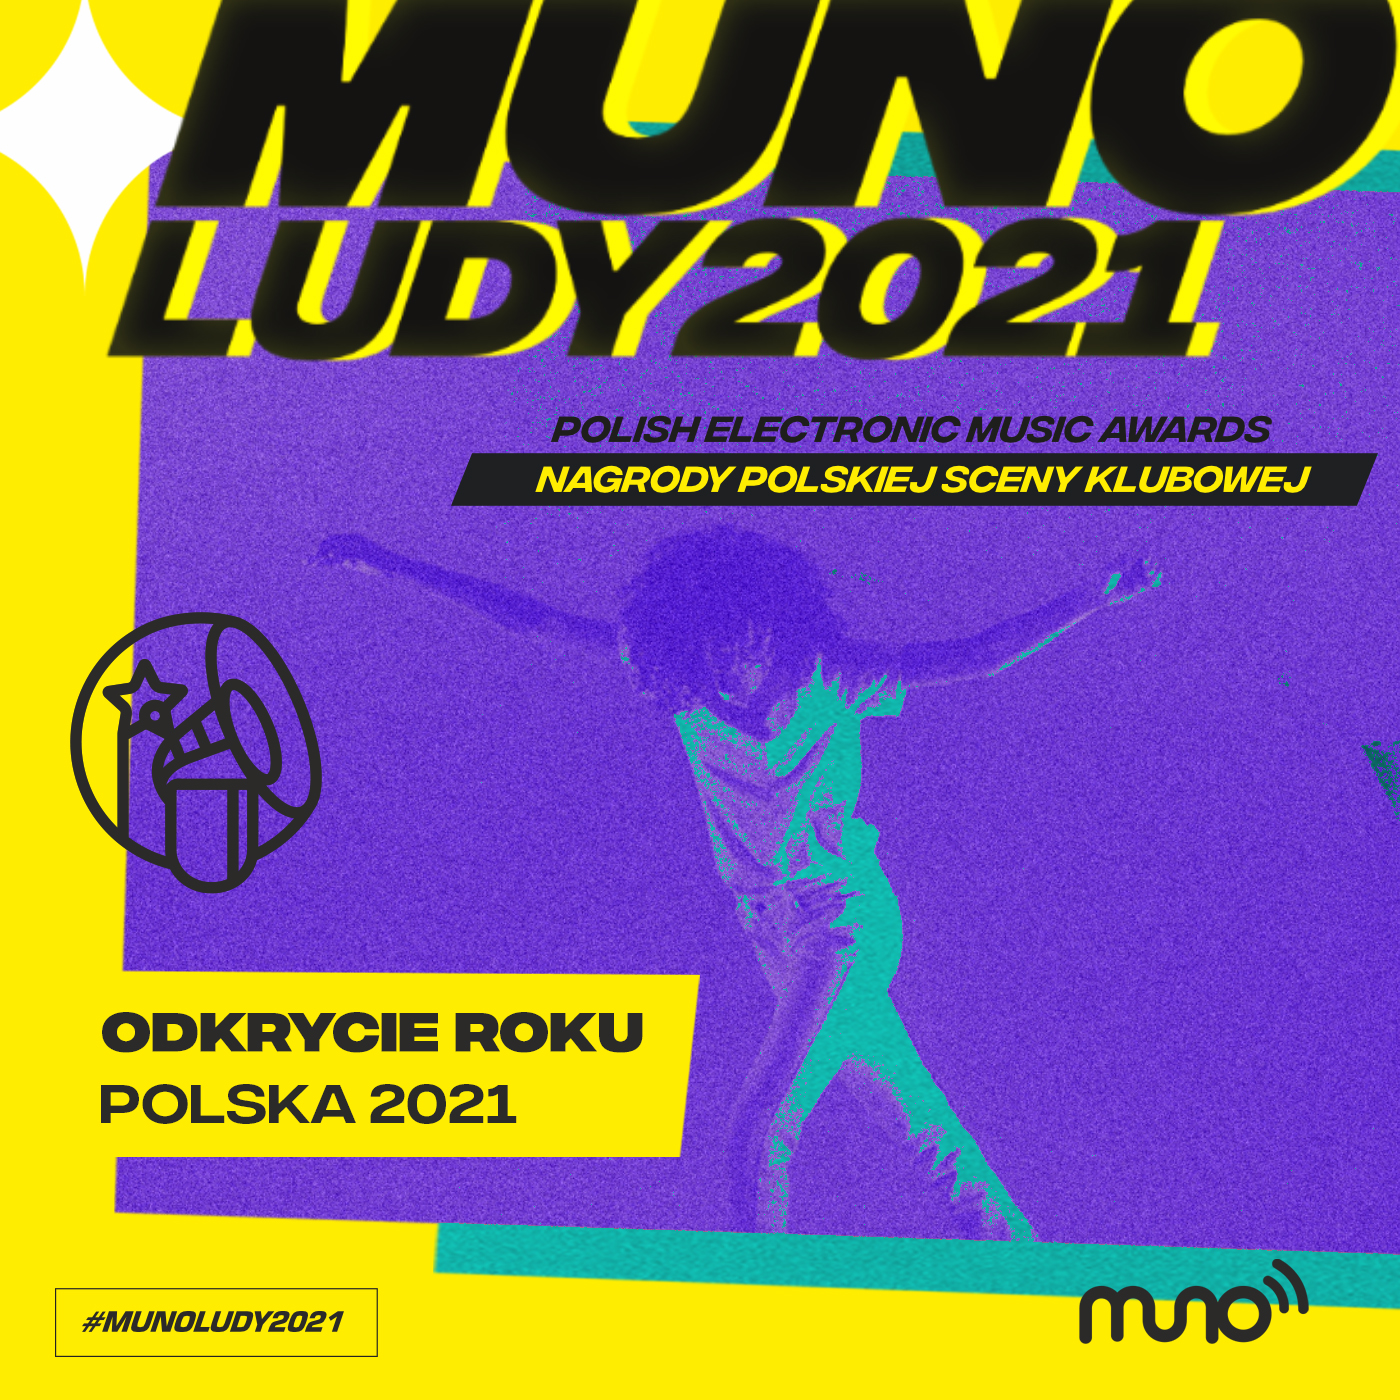 Munoludy 2021, Odkrycie Roku Polska